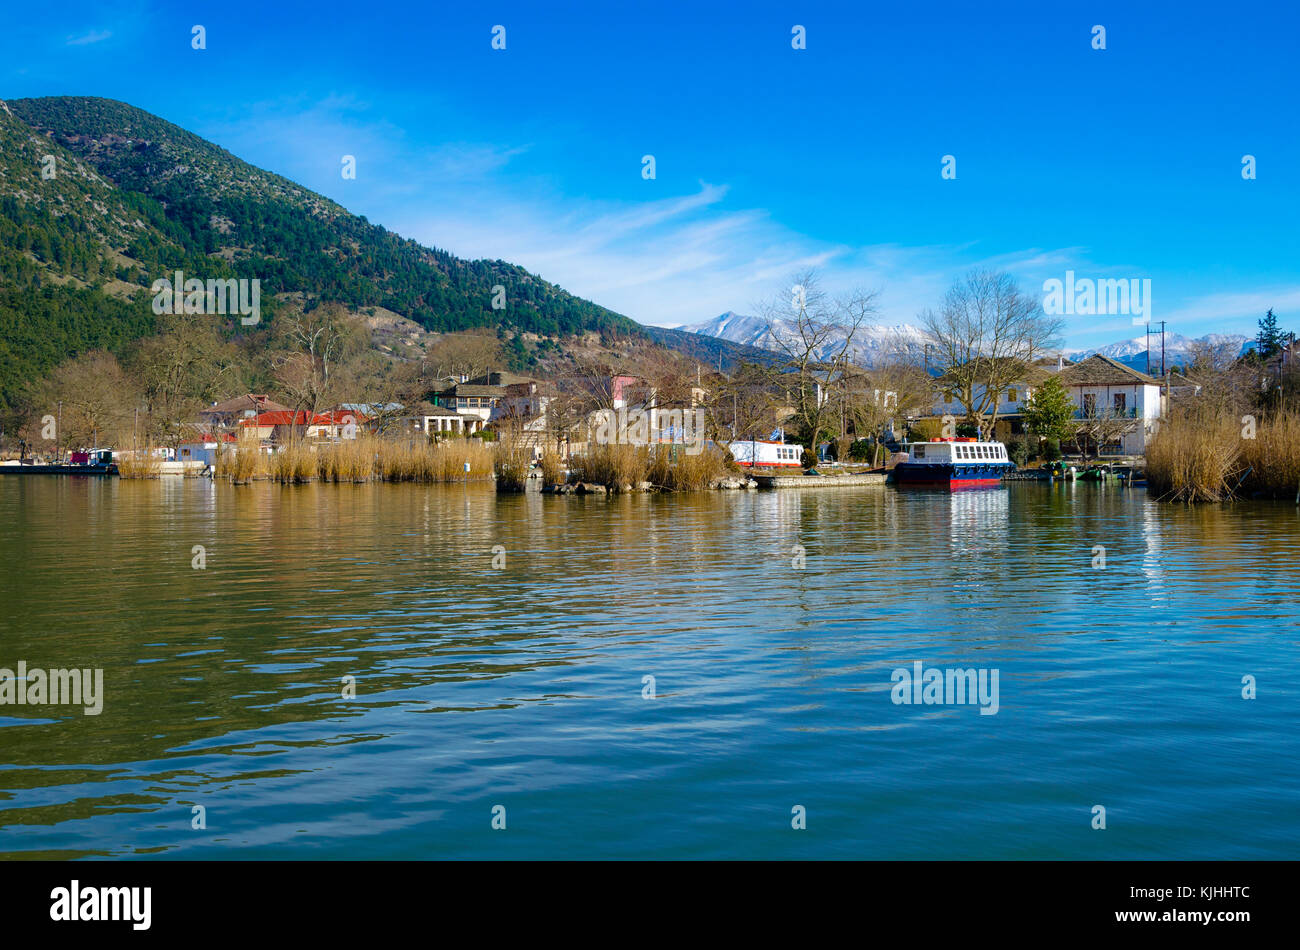 Die pictursque Ufer der Insel von Kyra frosini nissaki am See Pamvotida, Ioannina, Griechenland. Stockfoto